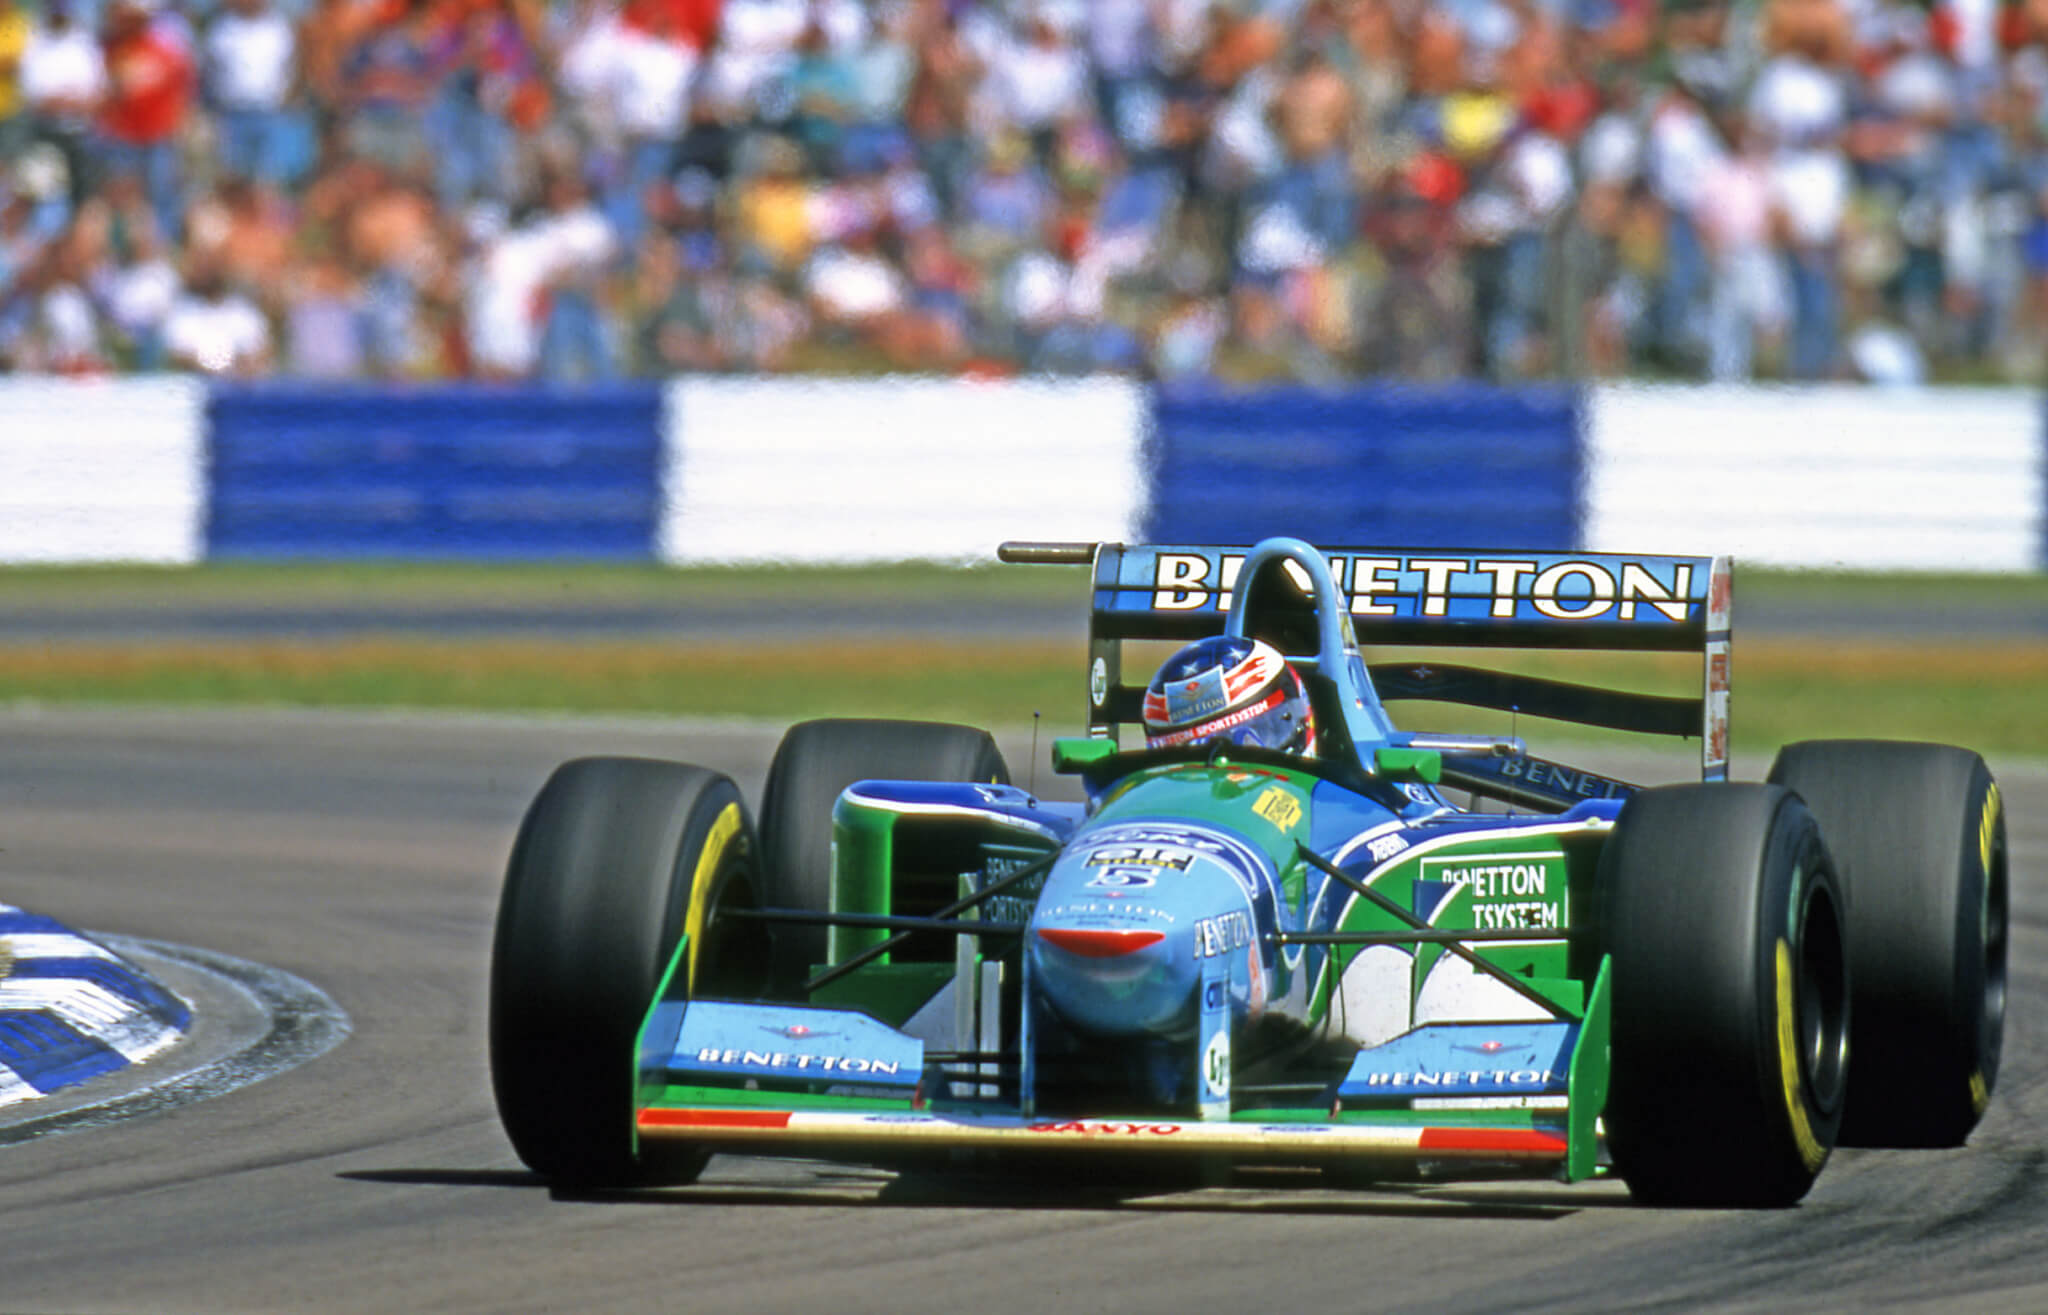 Schumacher Benetton Silverstone F1 1994